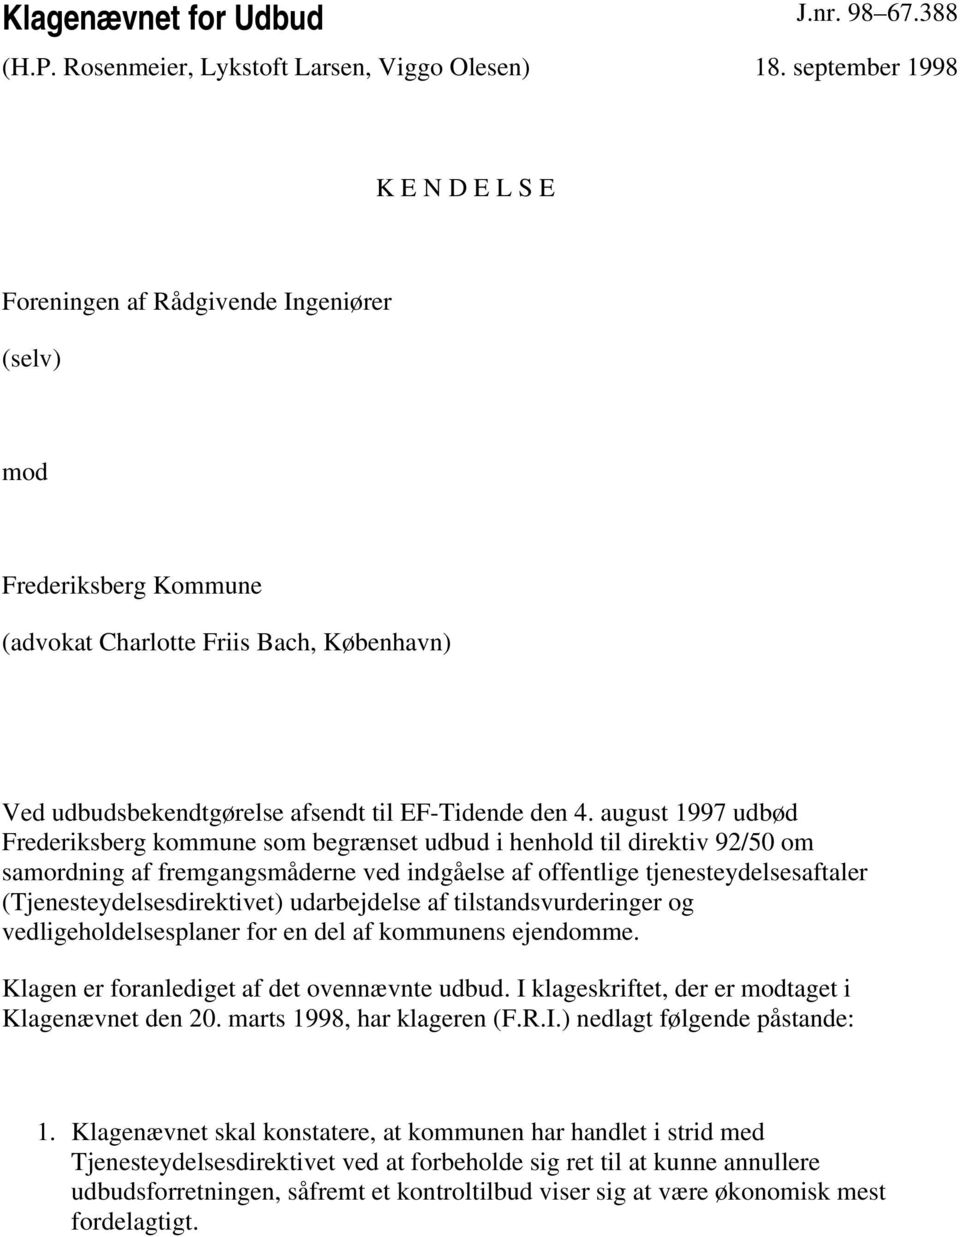 august 1997 udbød Frederiksberg kommune som begrænset udbud i henhold til direktiv 92/50 om samordning af fremgangsmåderne ved indgåelse af offentlige tjenesteydelsesaftaler